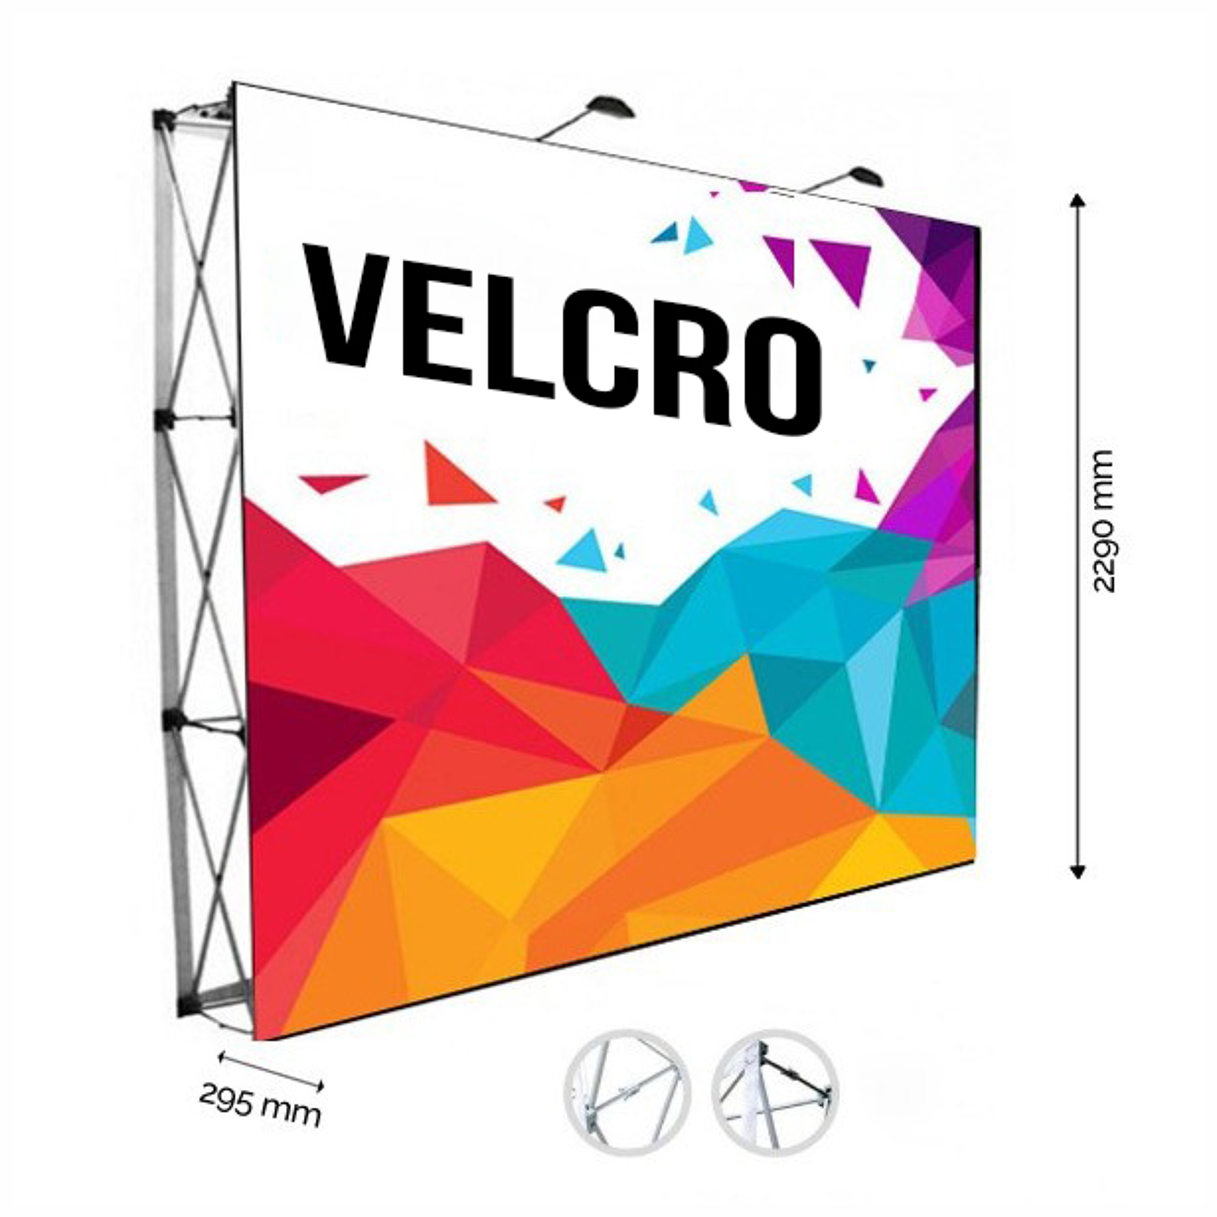 Display Recto Velcro + Banner. Modelo 3x3 (2.28m ancho x 2.29m alto)